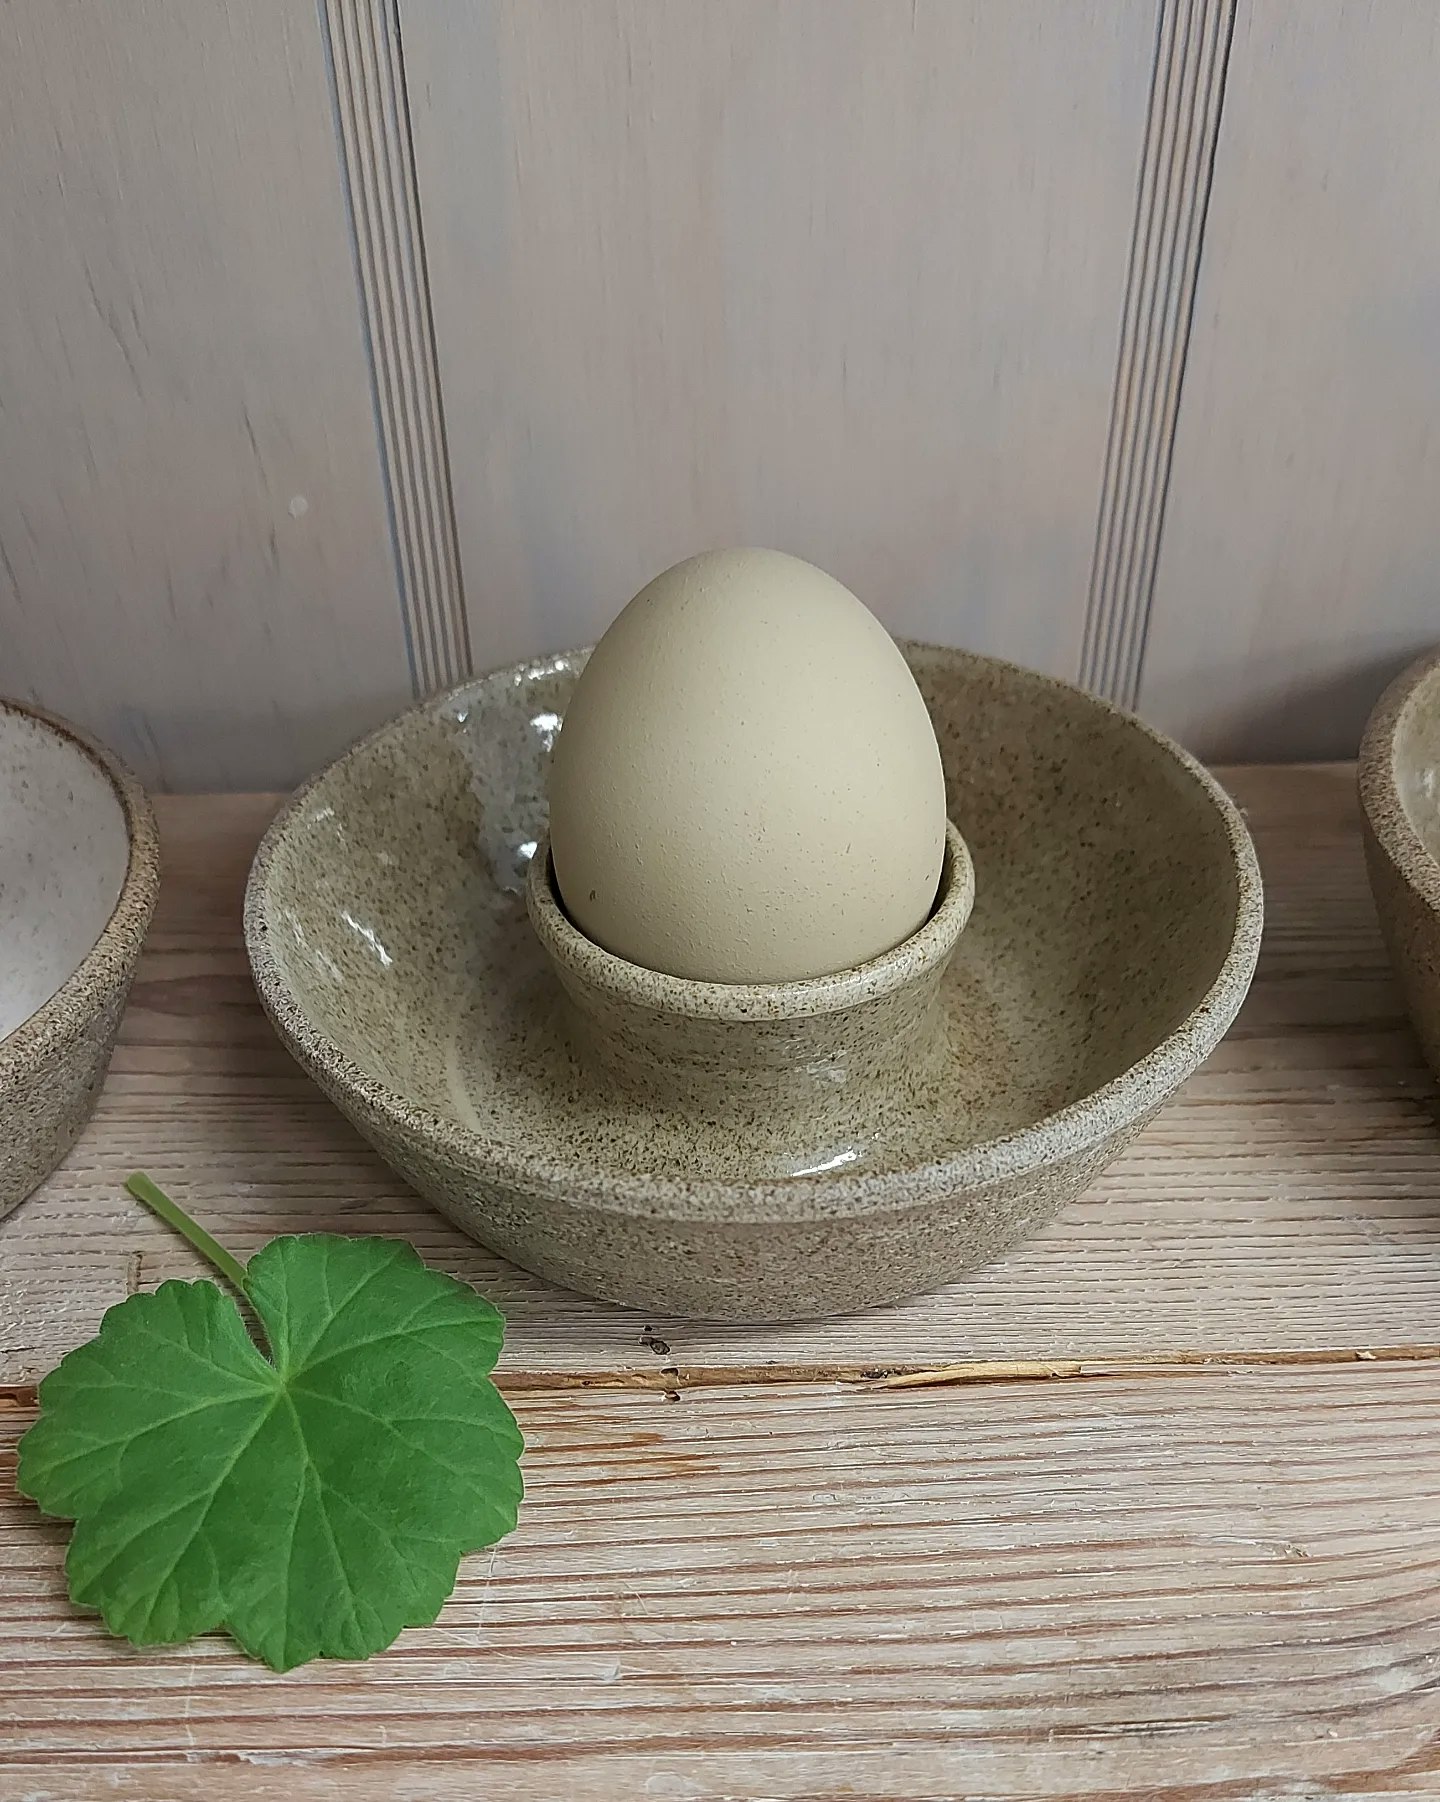 Frida Nilsson Keramik handgjord keramik drejad stengods äggkopp